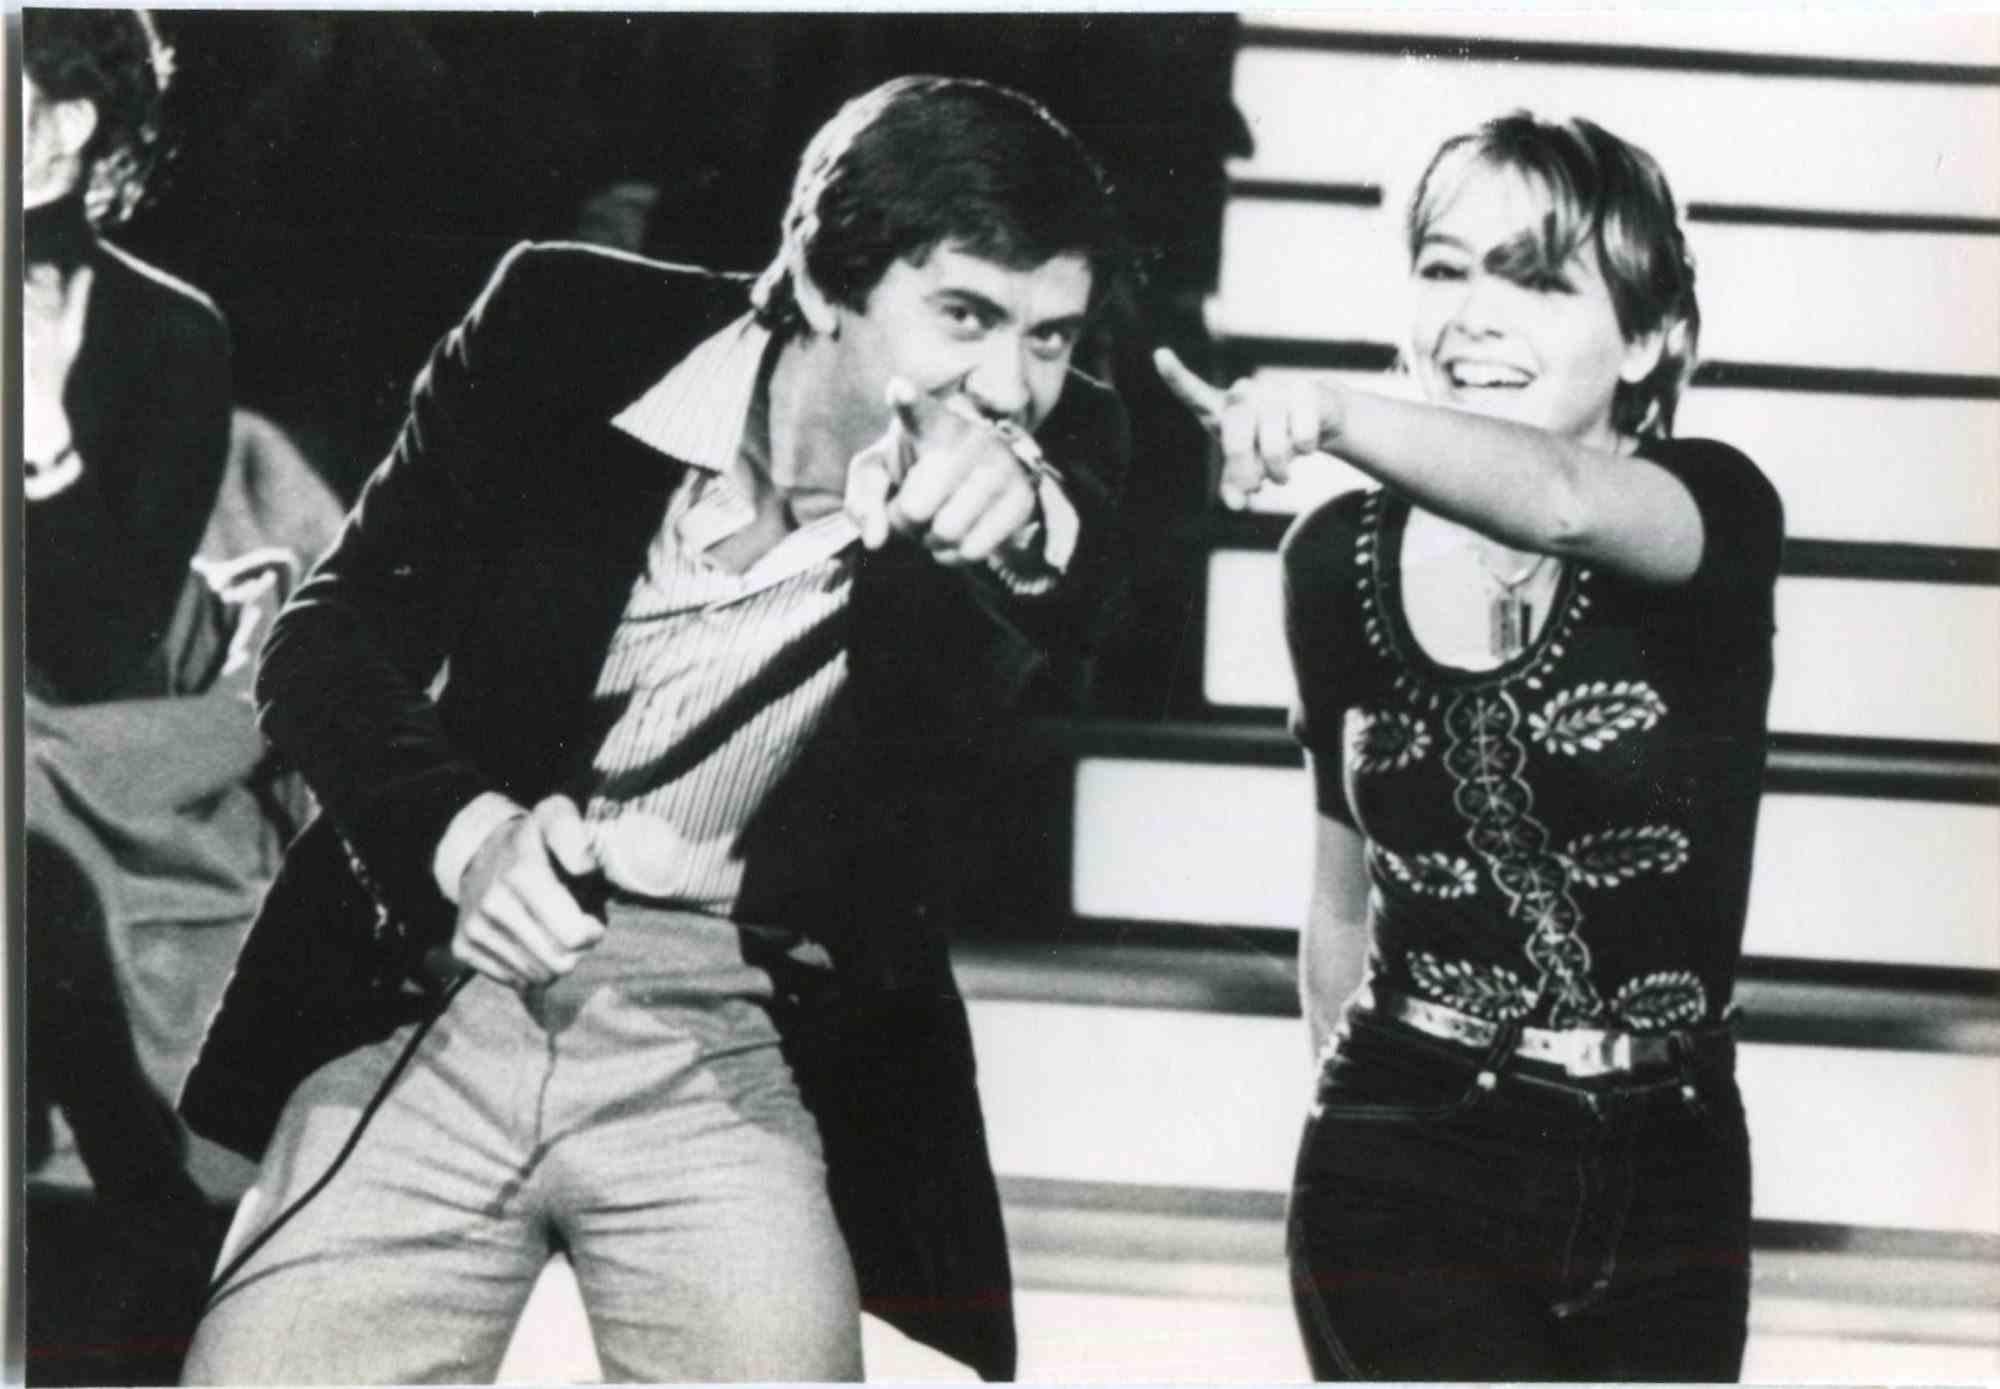 Gianni Morandi and Elisabetta Virgili - Vintage Photo - 1970s